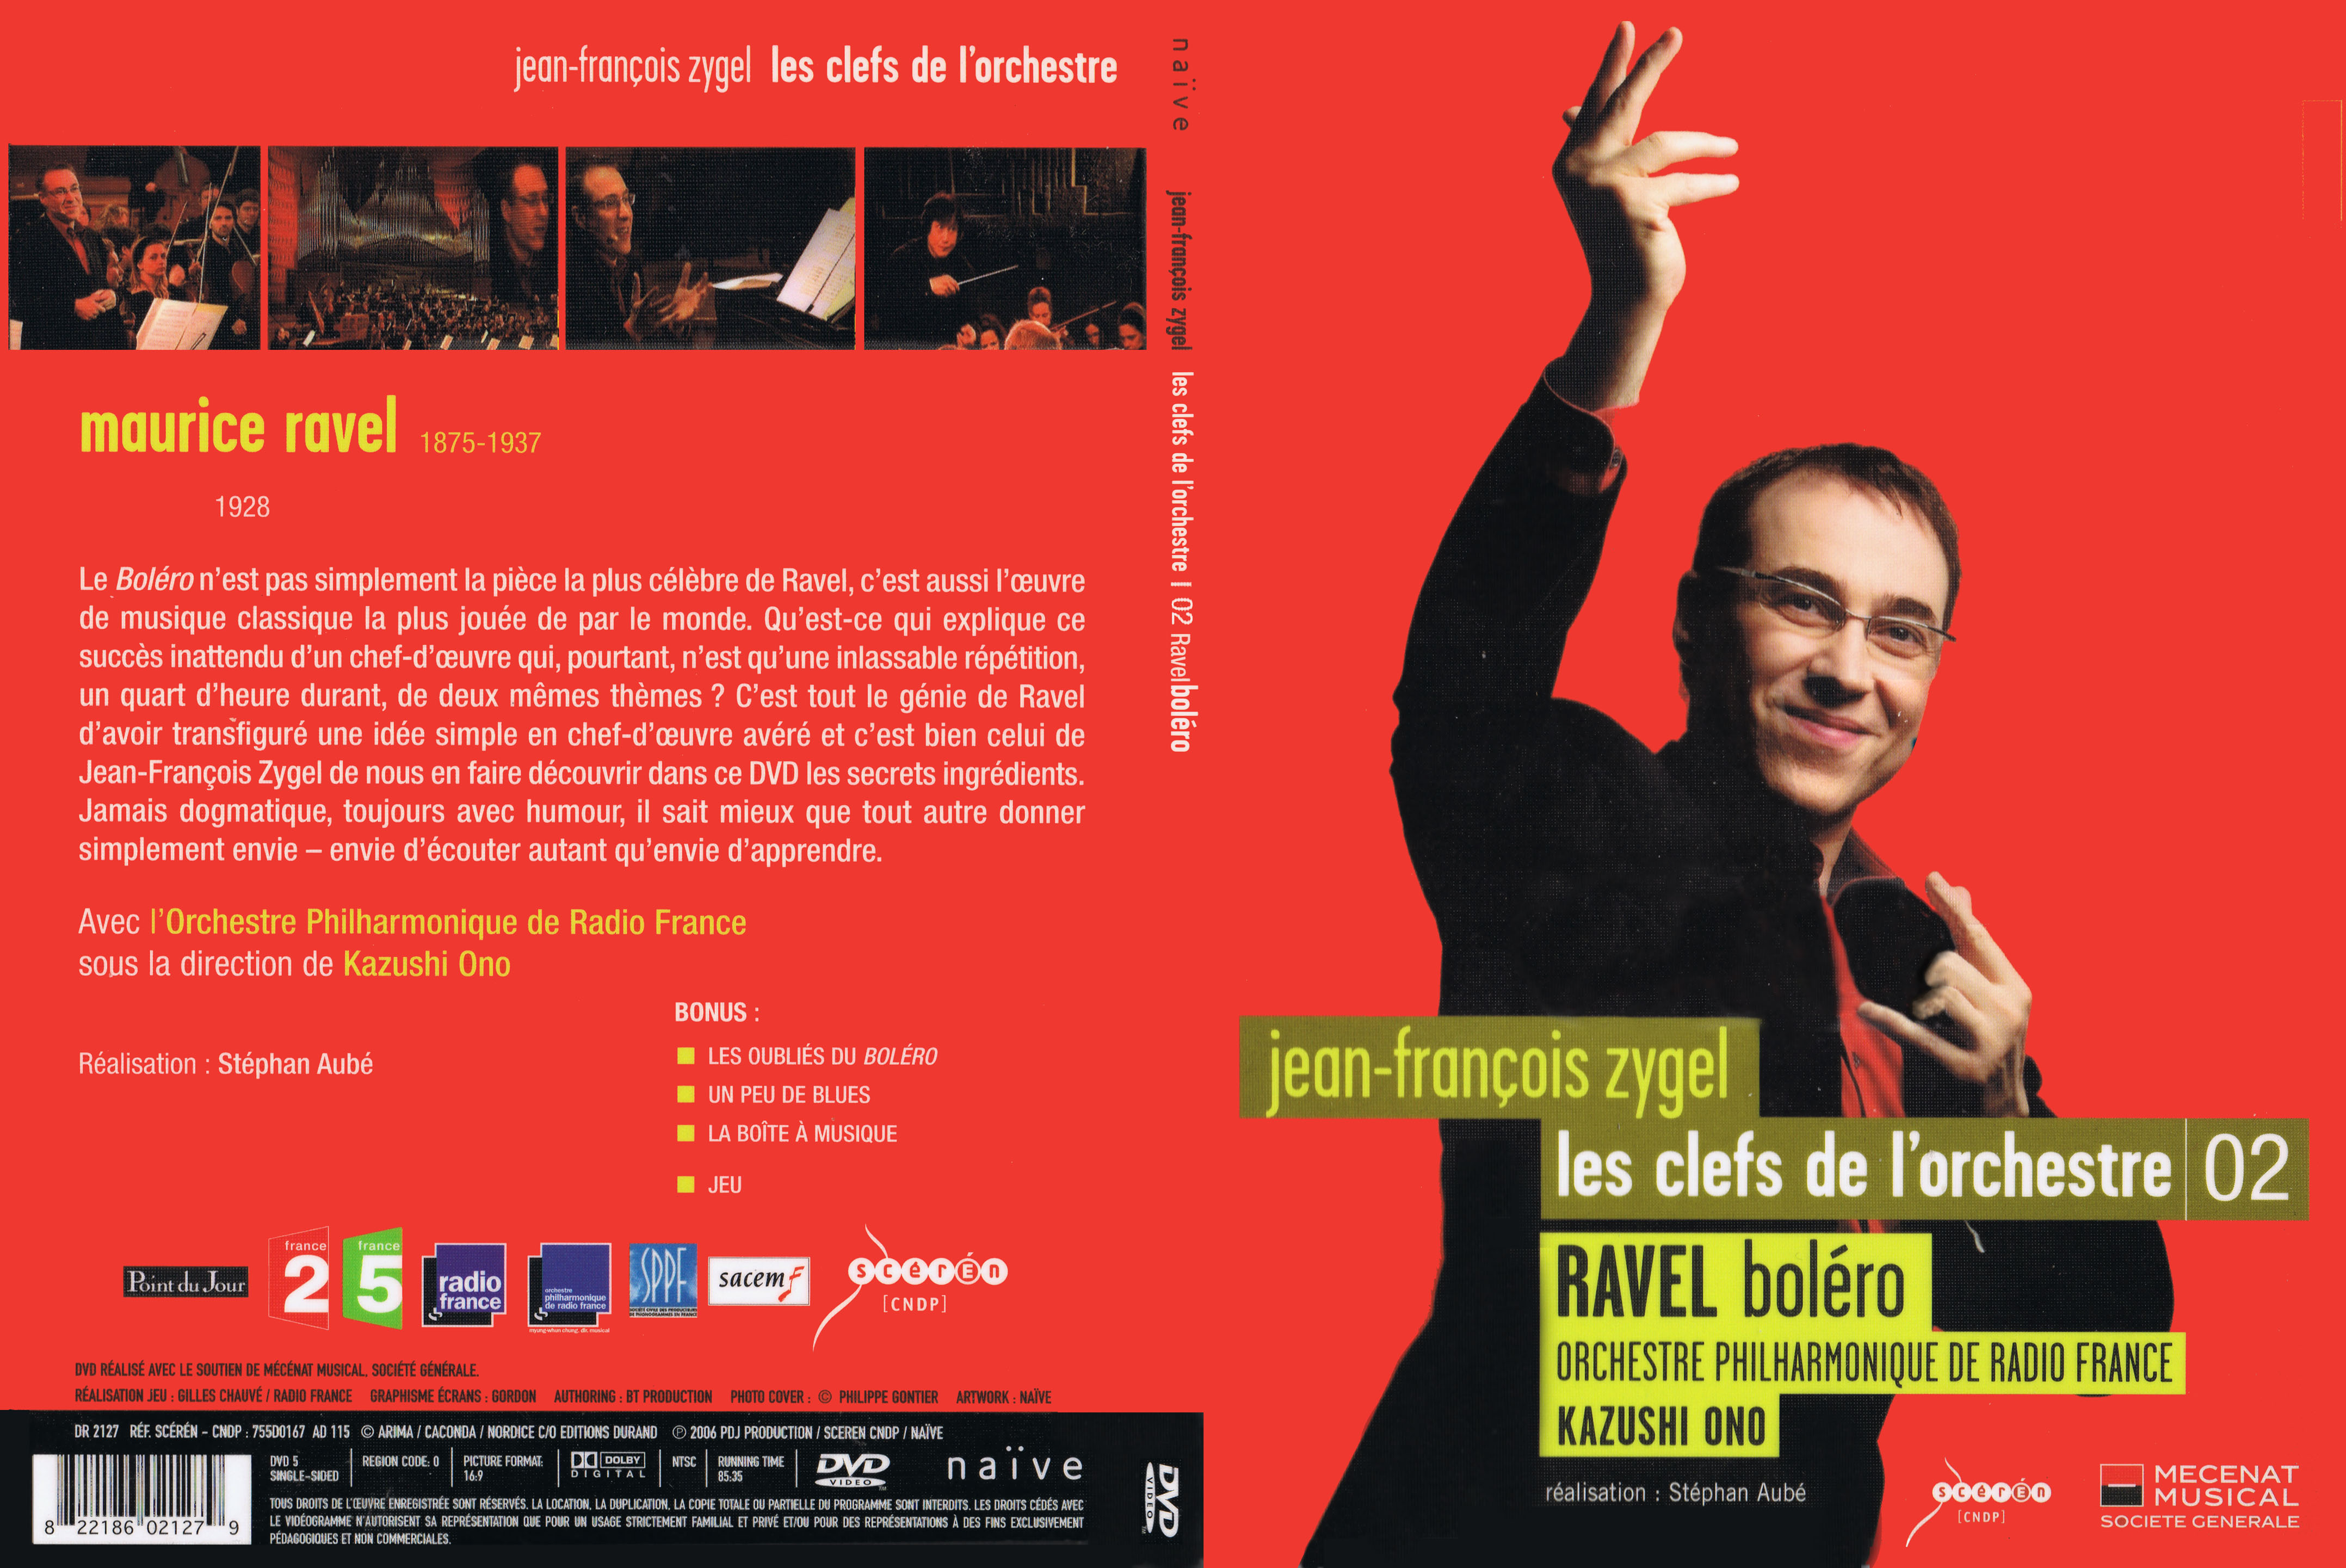 Jaquette DVD Jean-Francois Zygel - Les clefs de l